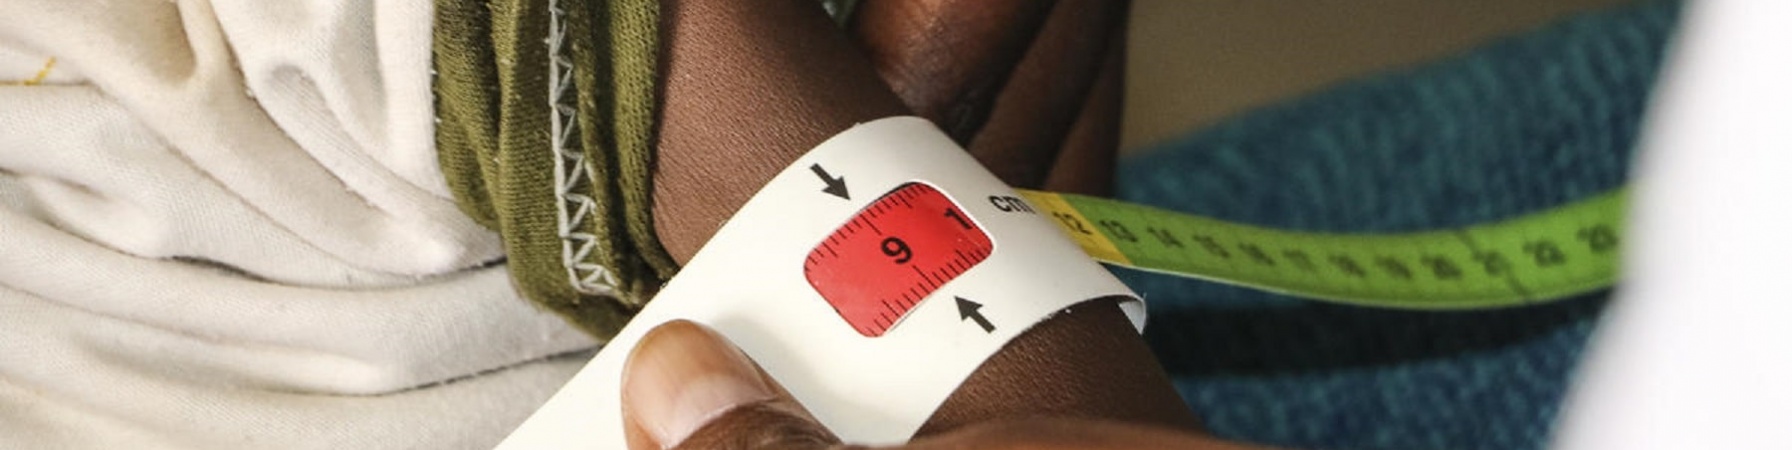 Braccio magro di un bambino etiope con attorno il braccialetto MUAC per misurare la sua grave malnutrizione